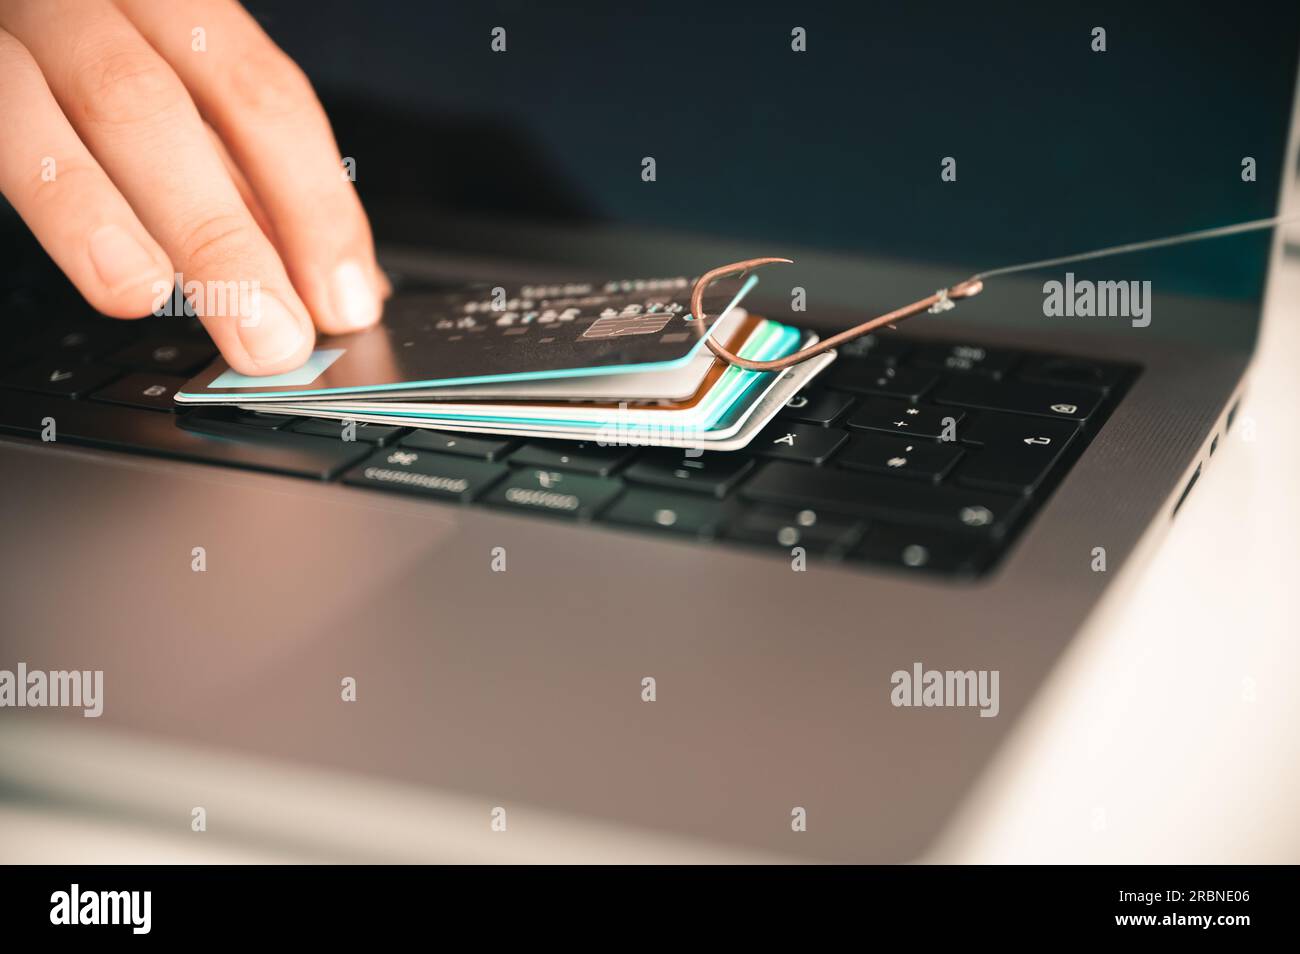 Visualisierung einer Person, die versucht, Phishing und Online-Betrug zu verhindern, indem sie eine undichte Kreditkarte auf einer PC-Tastatur hält, die an einem Fischerhaken hängt Stockfoto